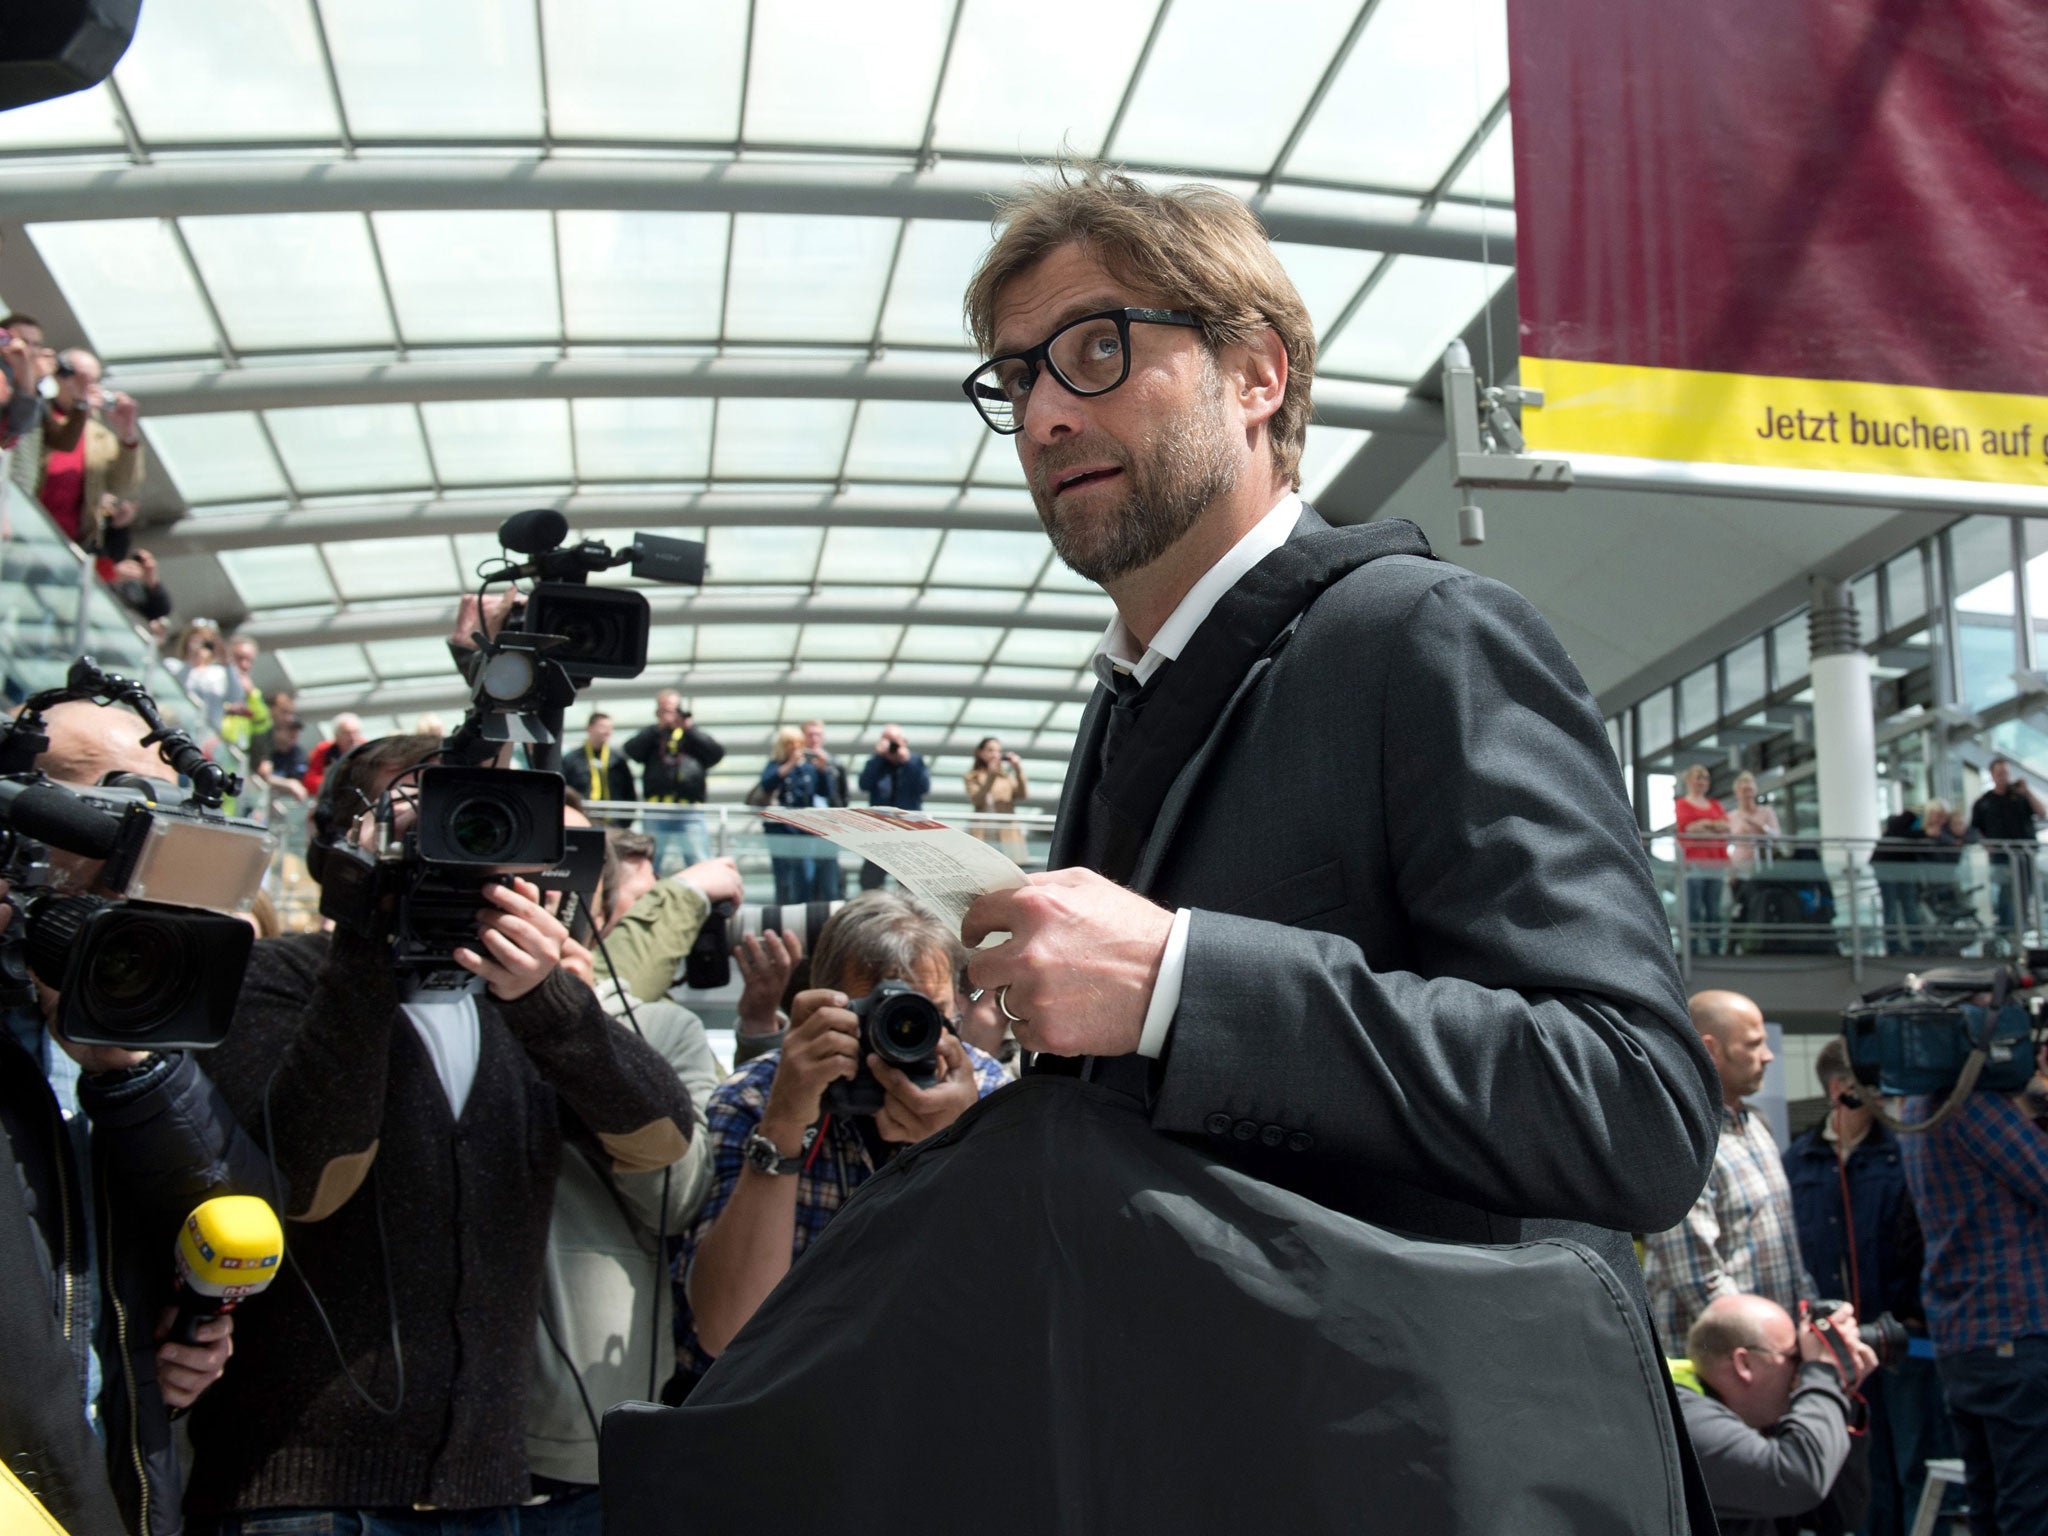 Jürgen Klopp checks in at Dortmund airport on his way to London